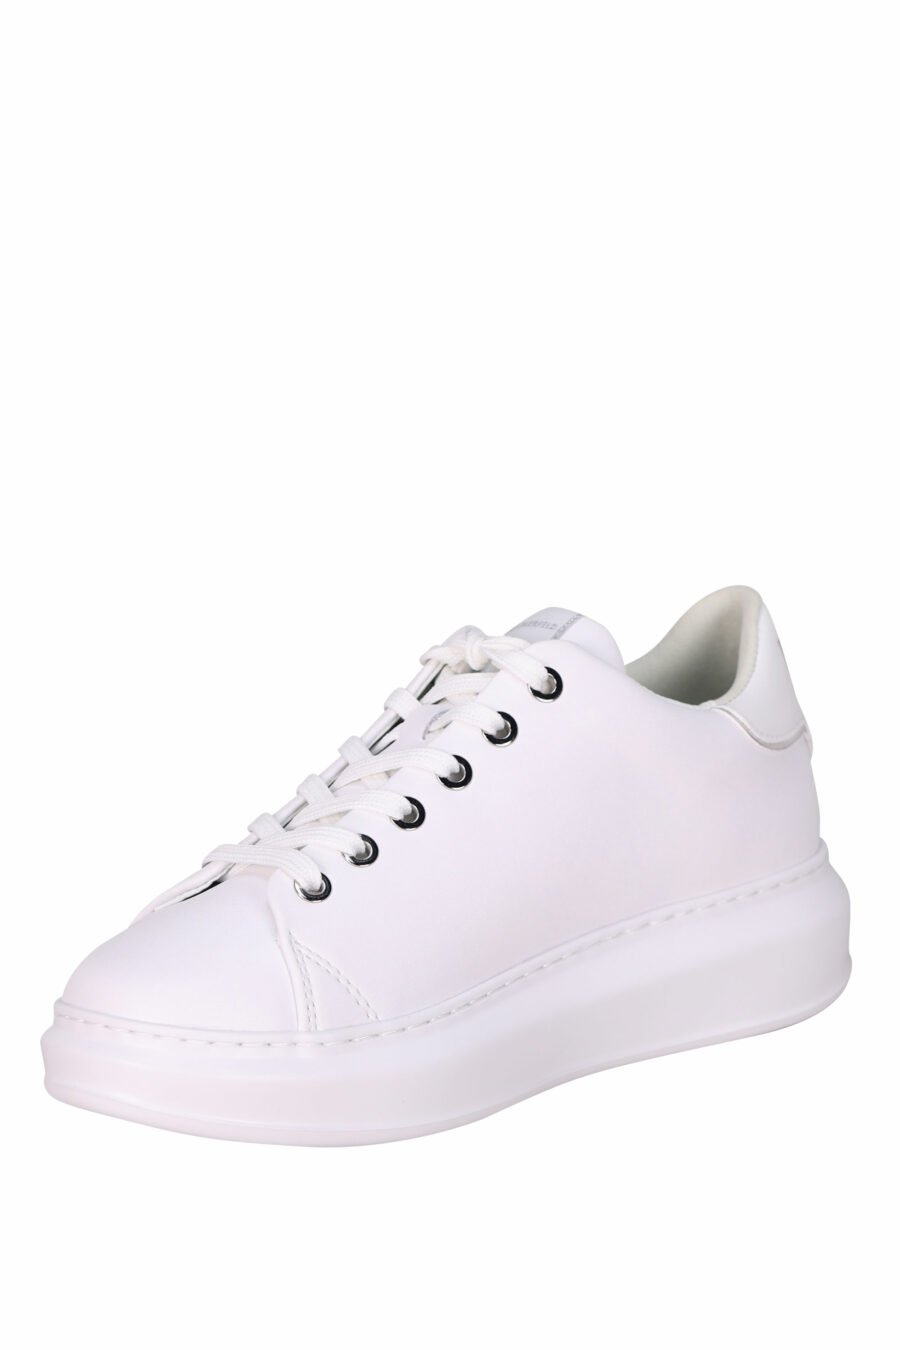 Zapatillas blancas "kapri" con detalle purpurina - 5059529351570 3